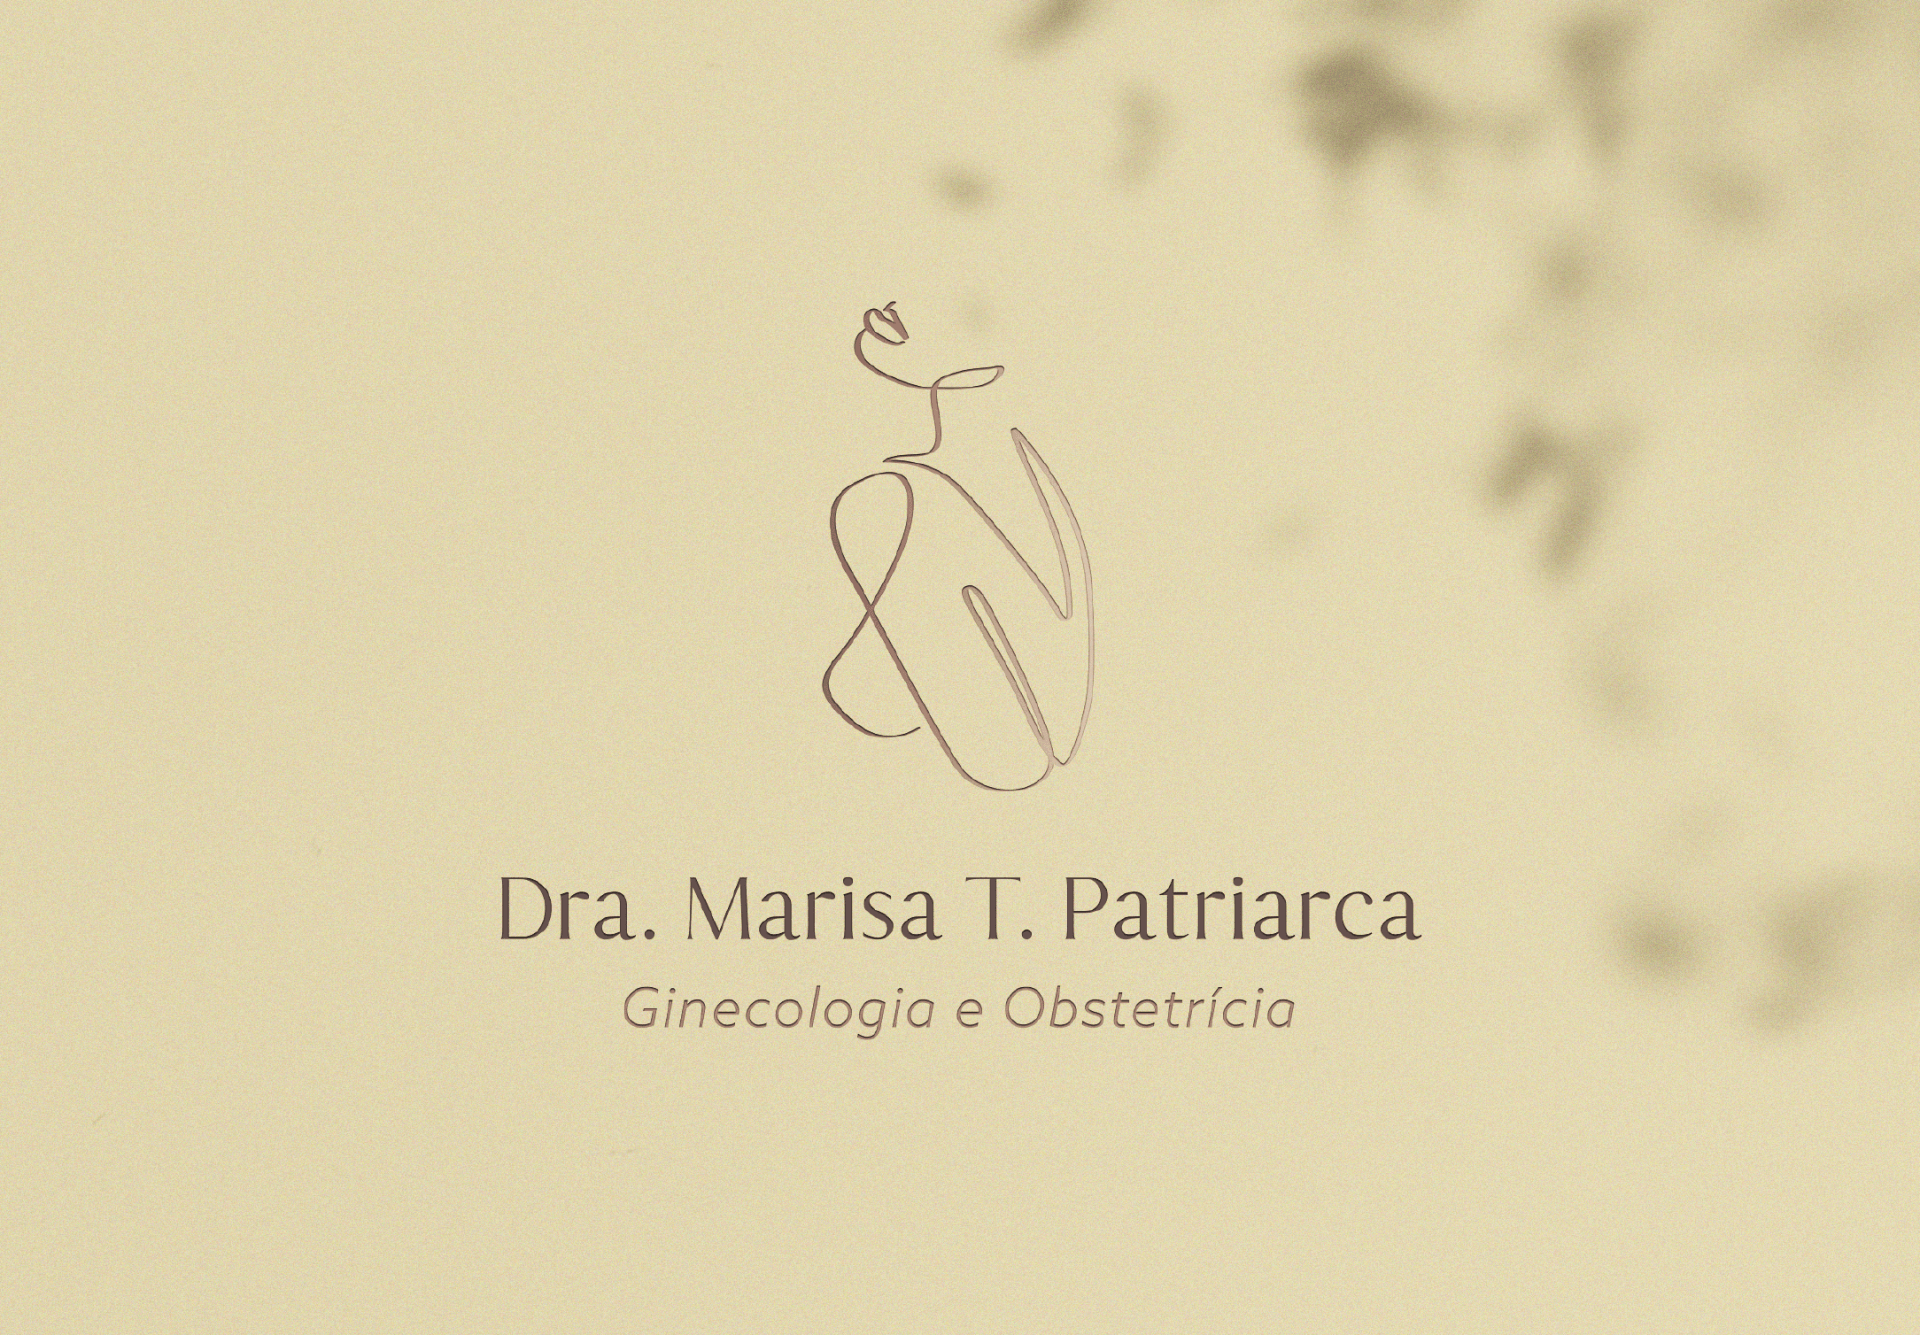 Logotipo da Dra. Marisa Patriarca aplicando sobre um fundo ocre com sombra de árvores.